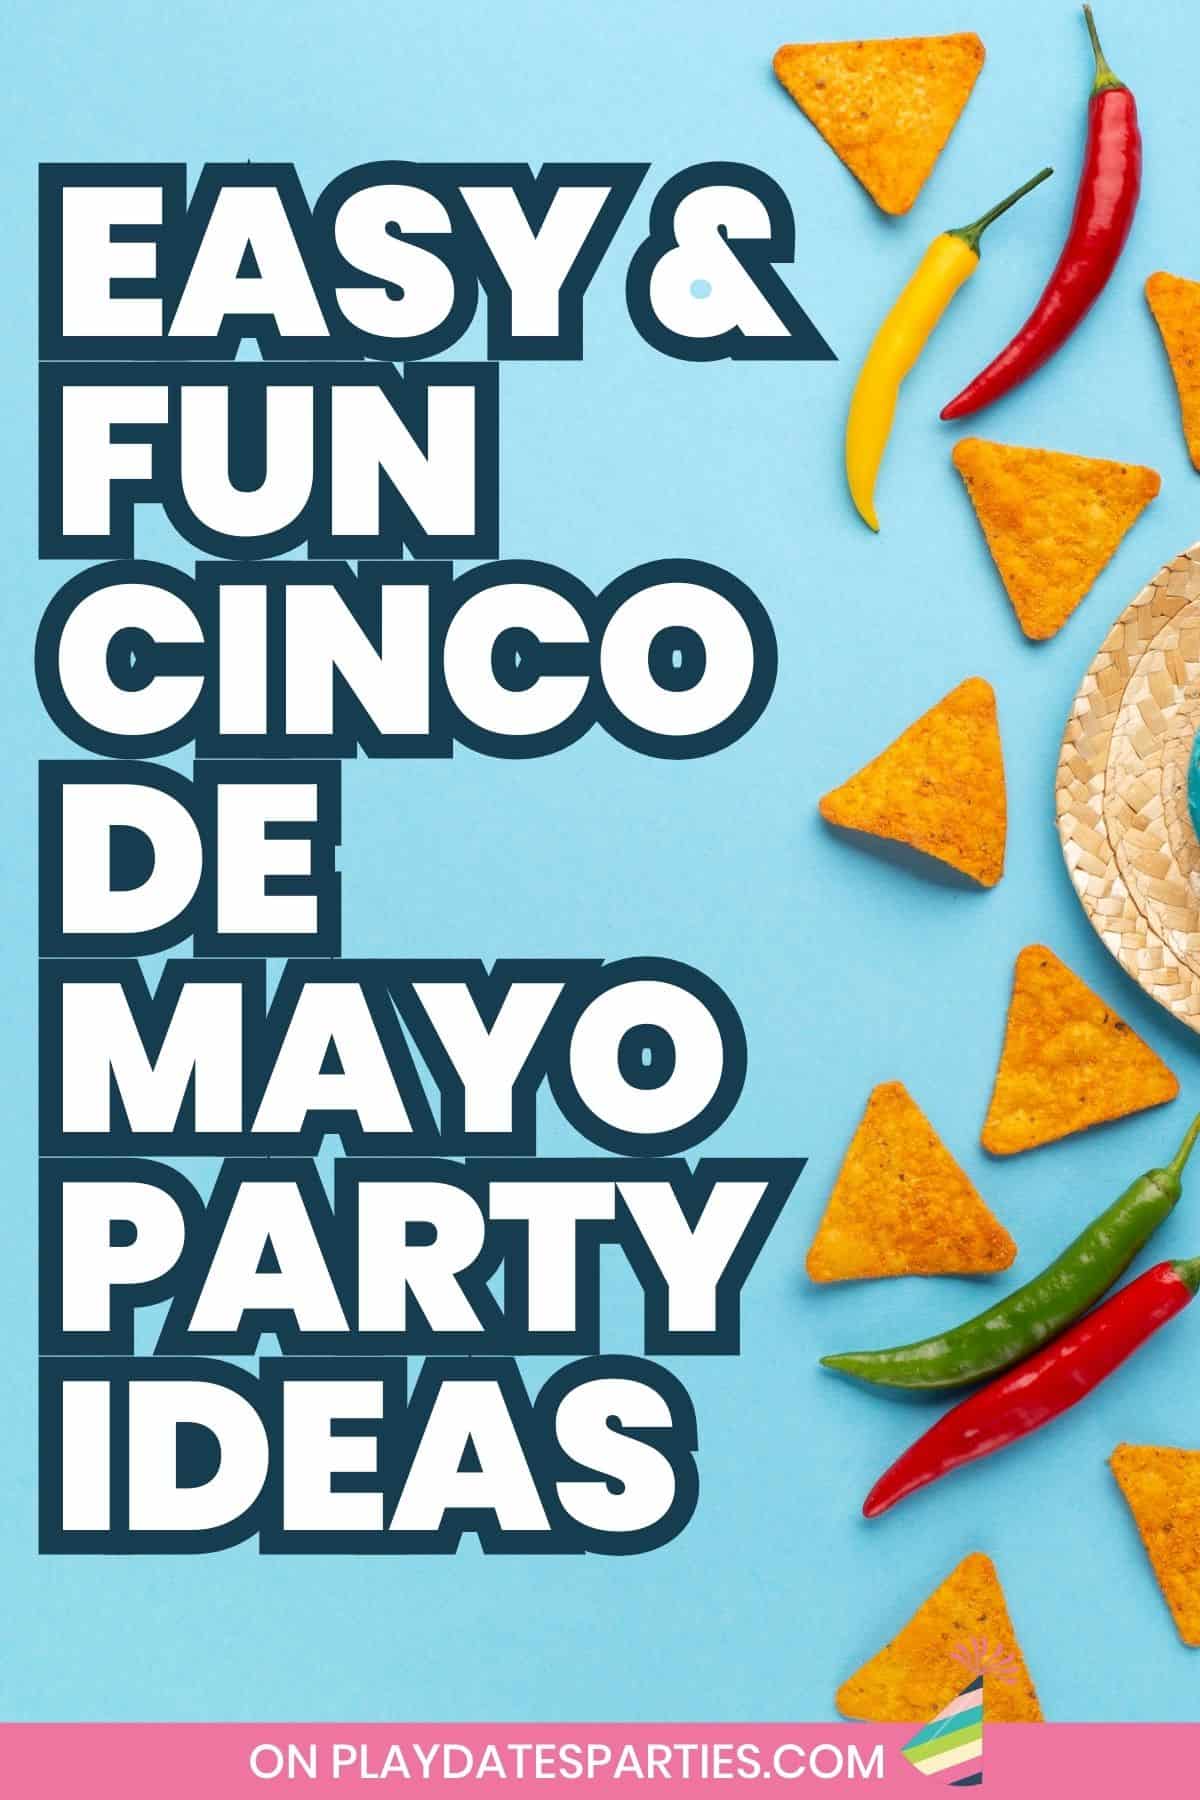 Cinco de Mayo party ideas pin image